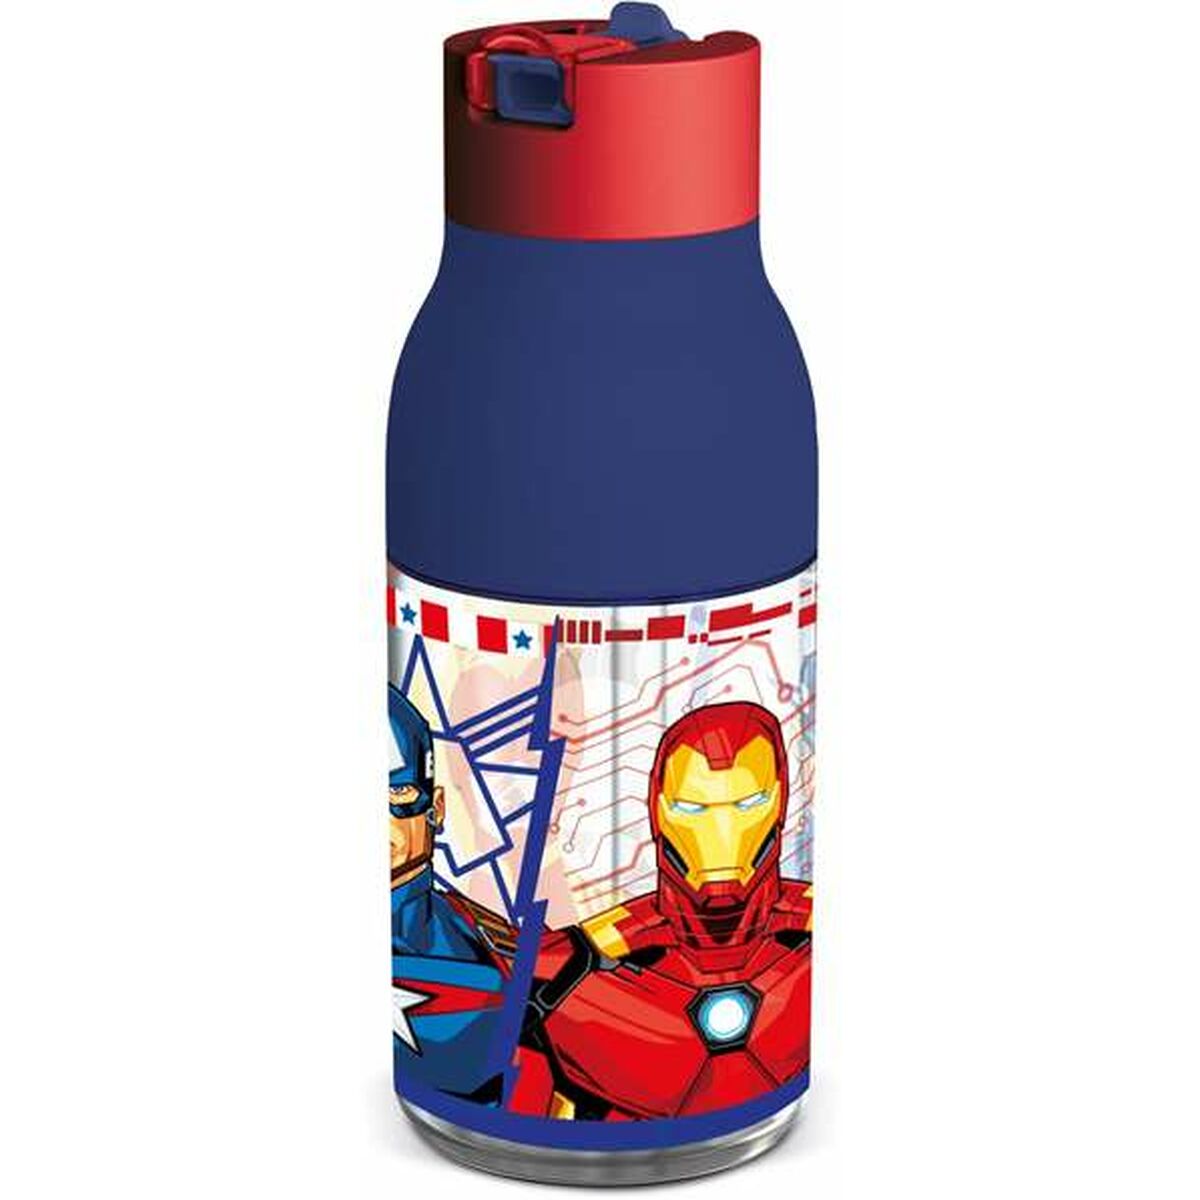 Marvel Avengers Full of Force Bottled Water